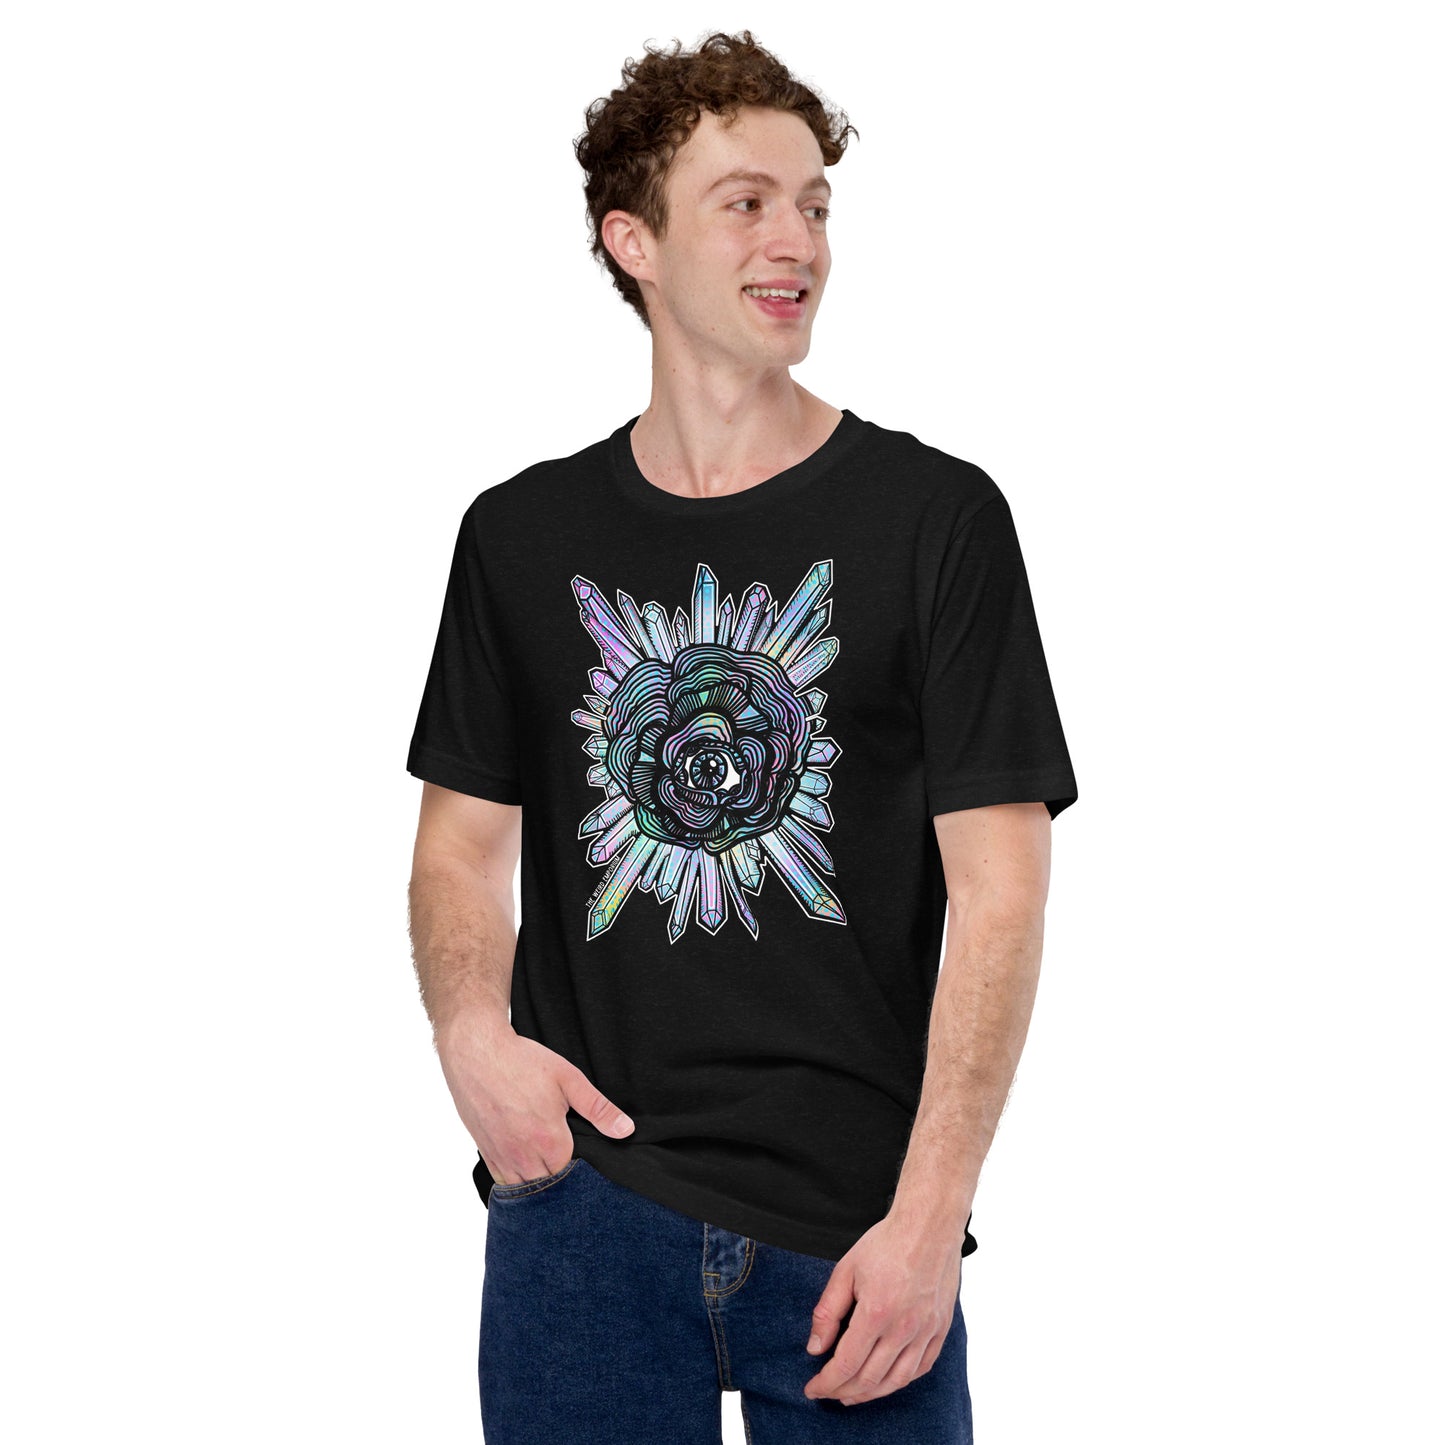 Eyeball Flower Crystals Shirt, Spooky Season Shirt, Stay Spooky Shirt, Pastel Goth Shirt, Spooky Aesthetic, the weird emporium